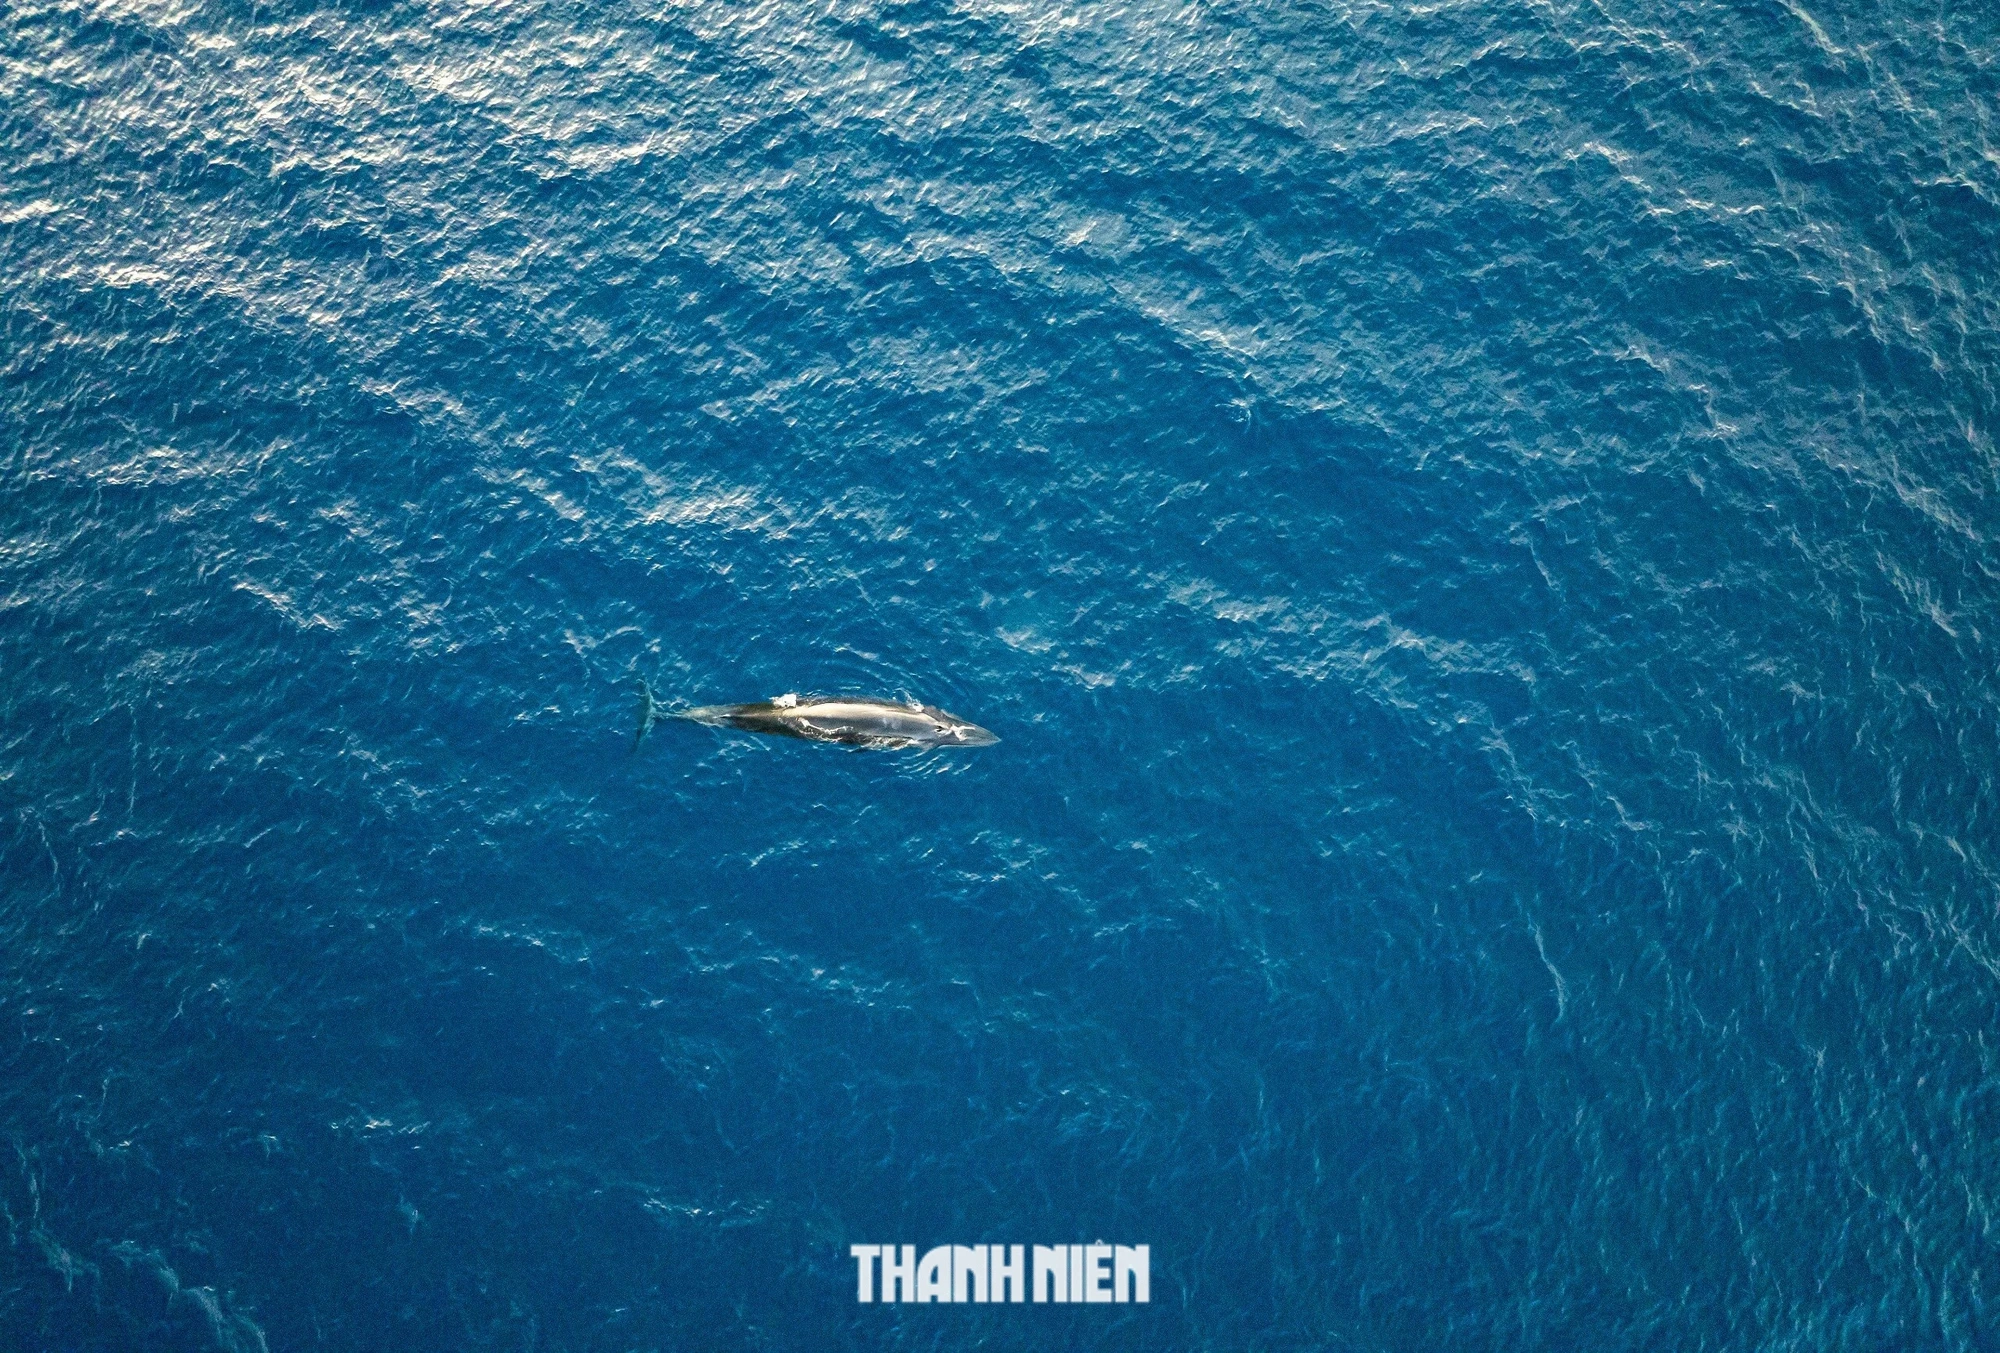 Cận cảnh cá voi dài gần 8 m săn mồi gần bờ biển Bình Định